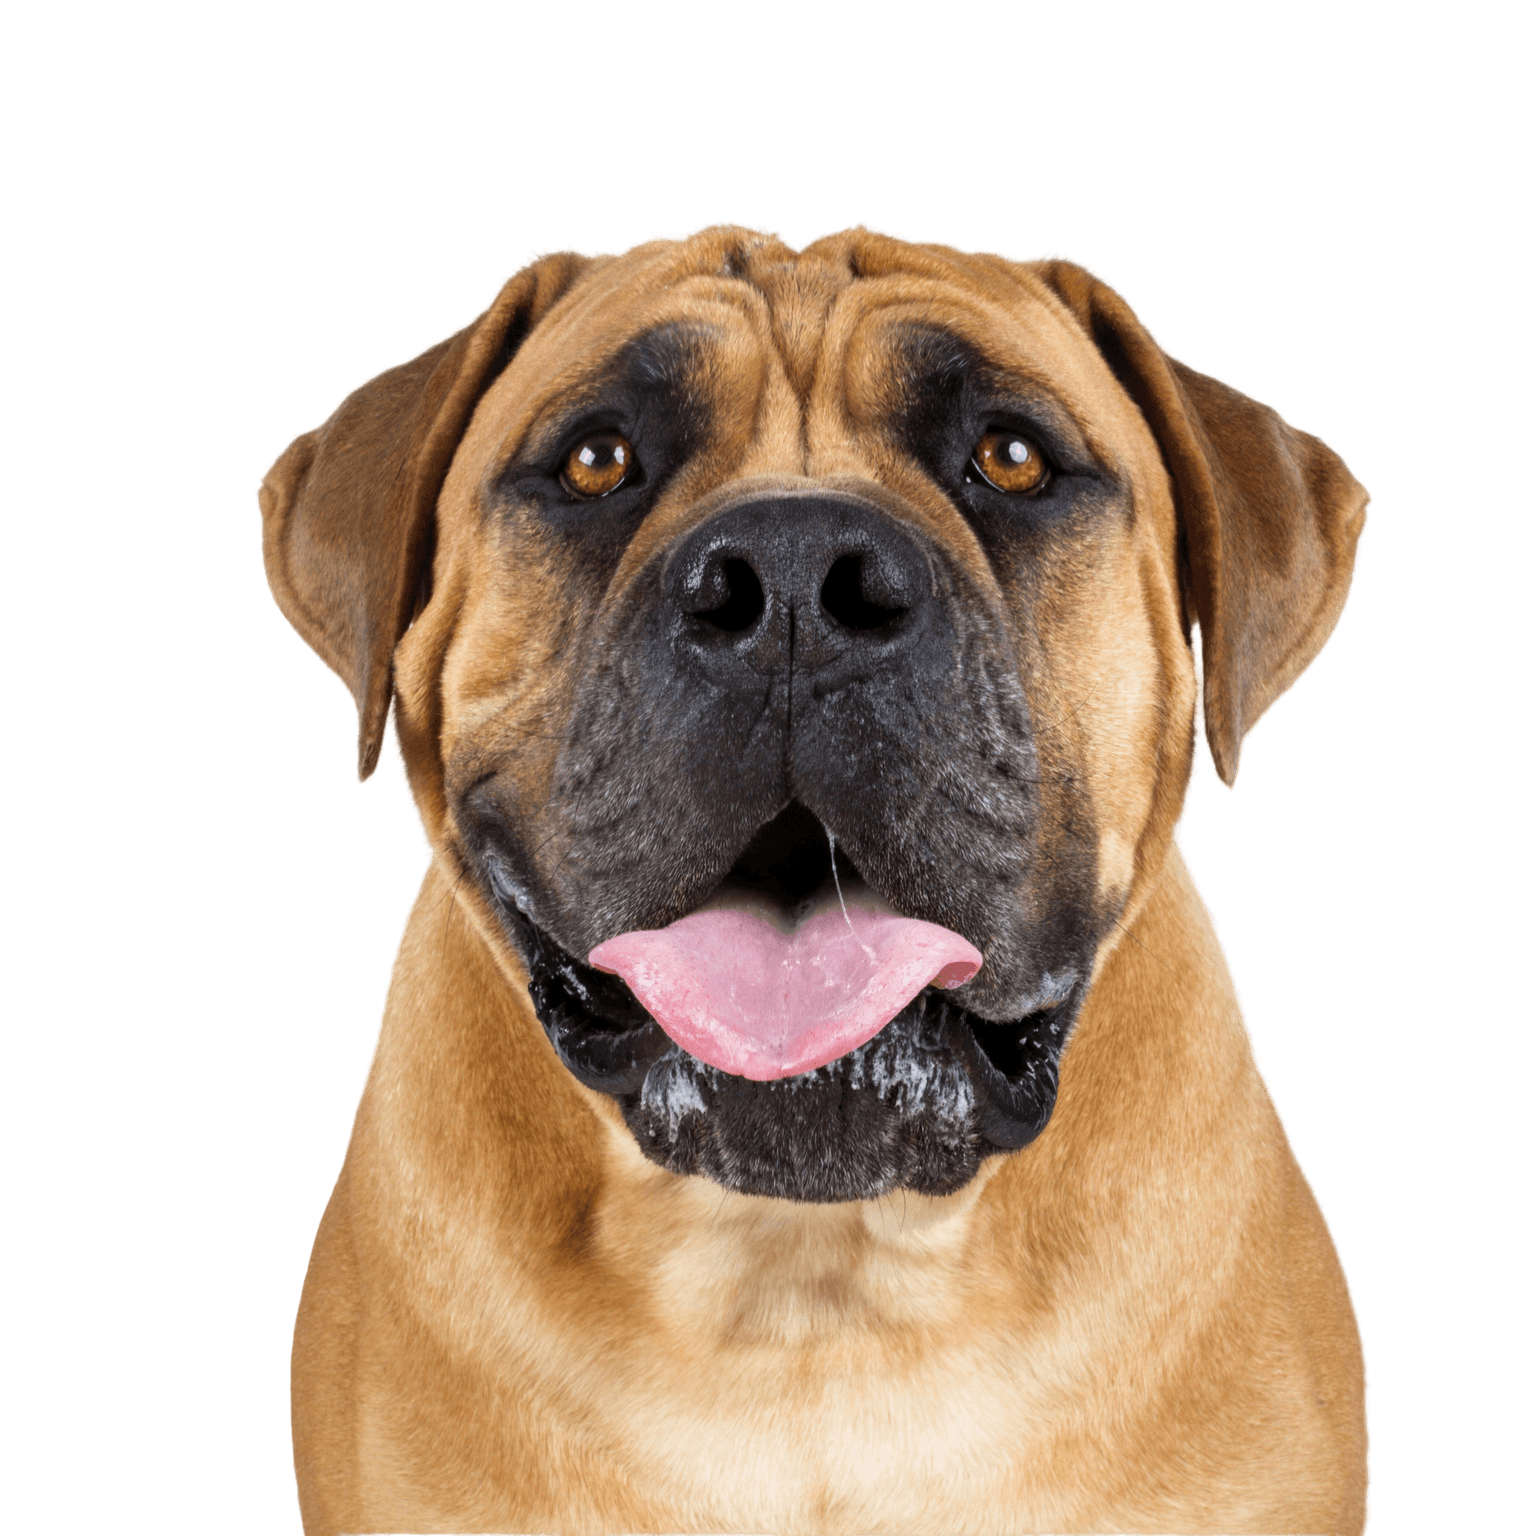 Bullmastiff, chien de type Mastiff anglais